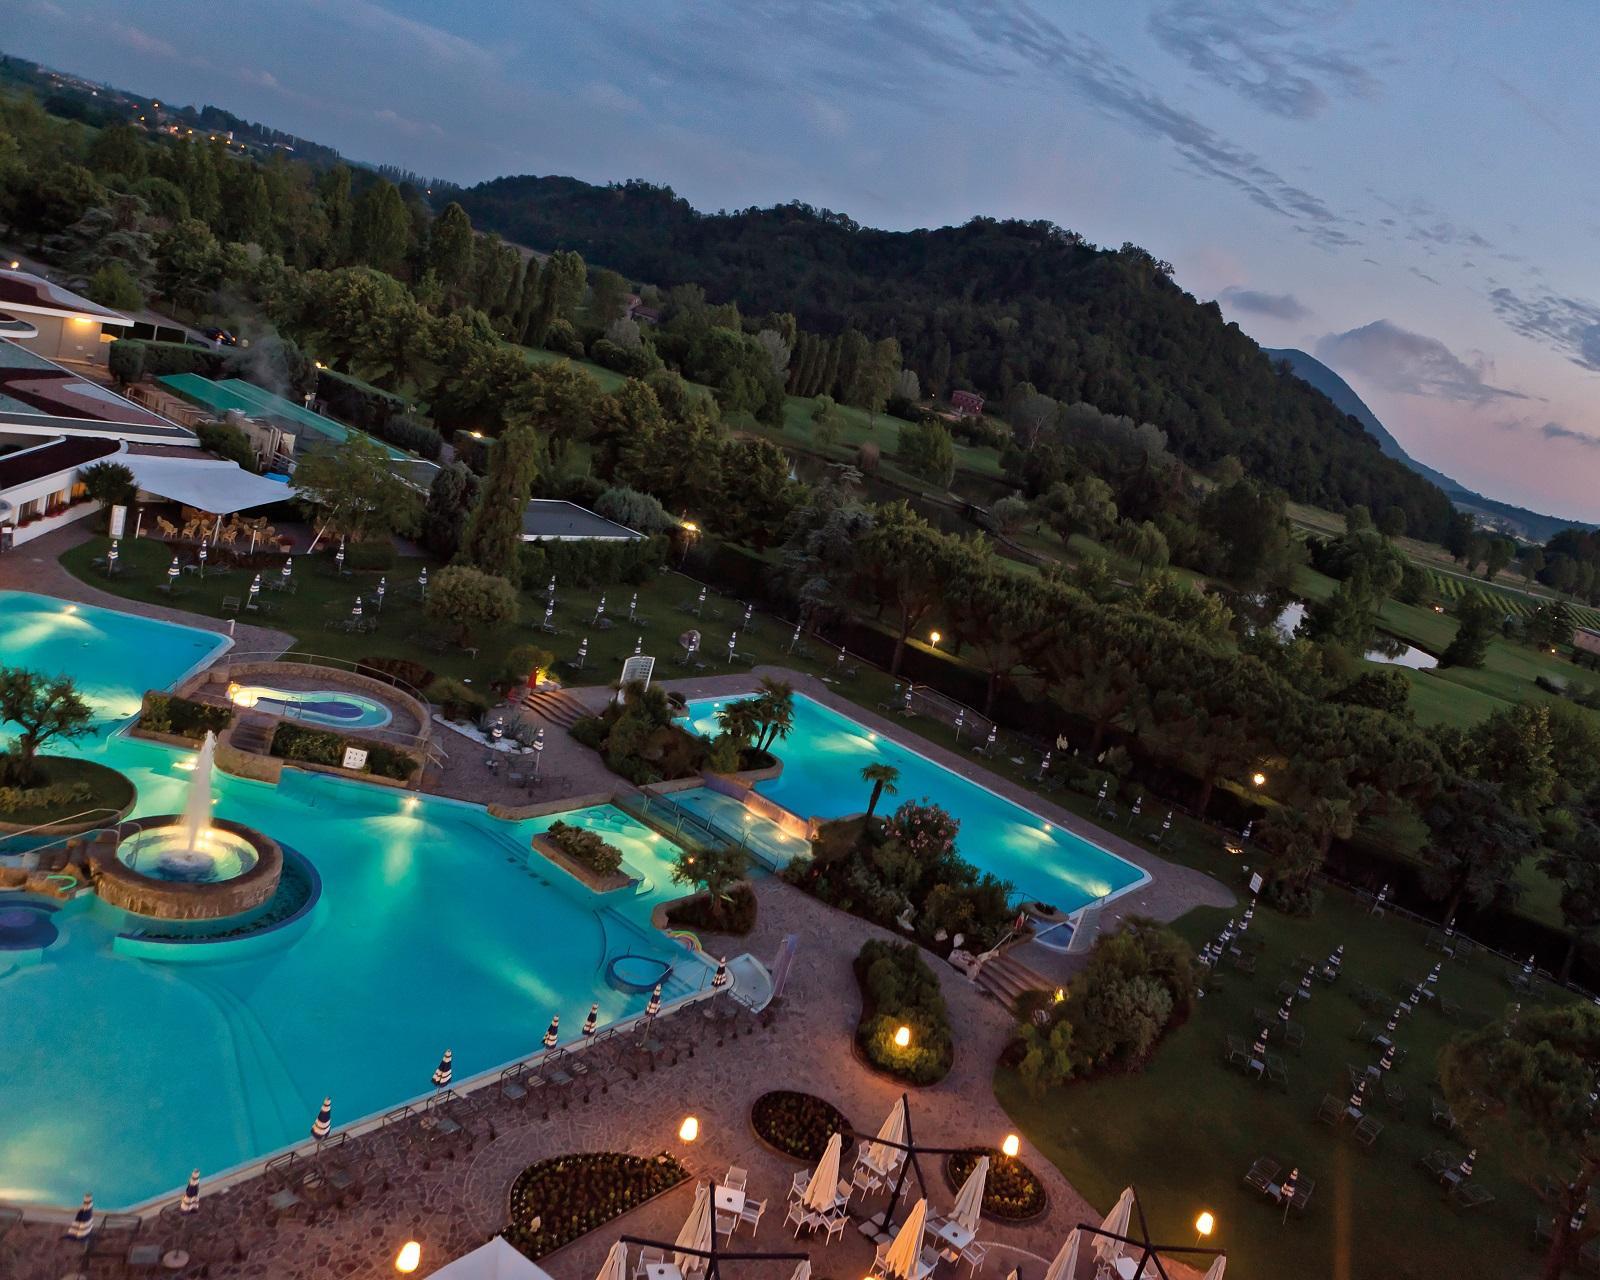 Majestic Galzignano Terme Spa & Golf Resort